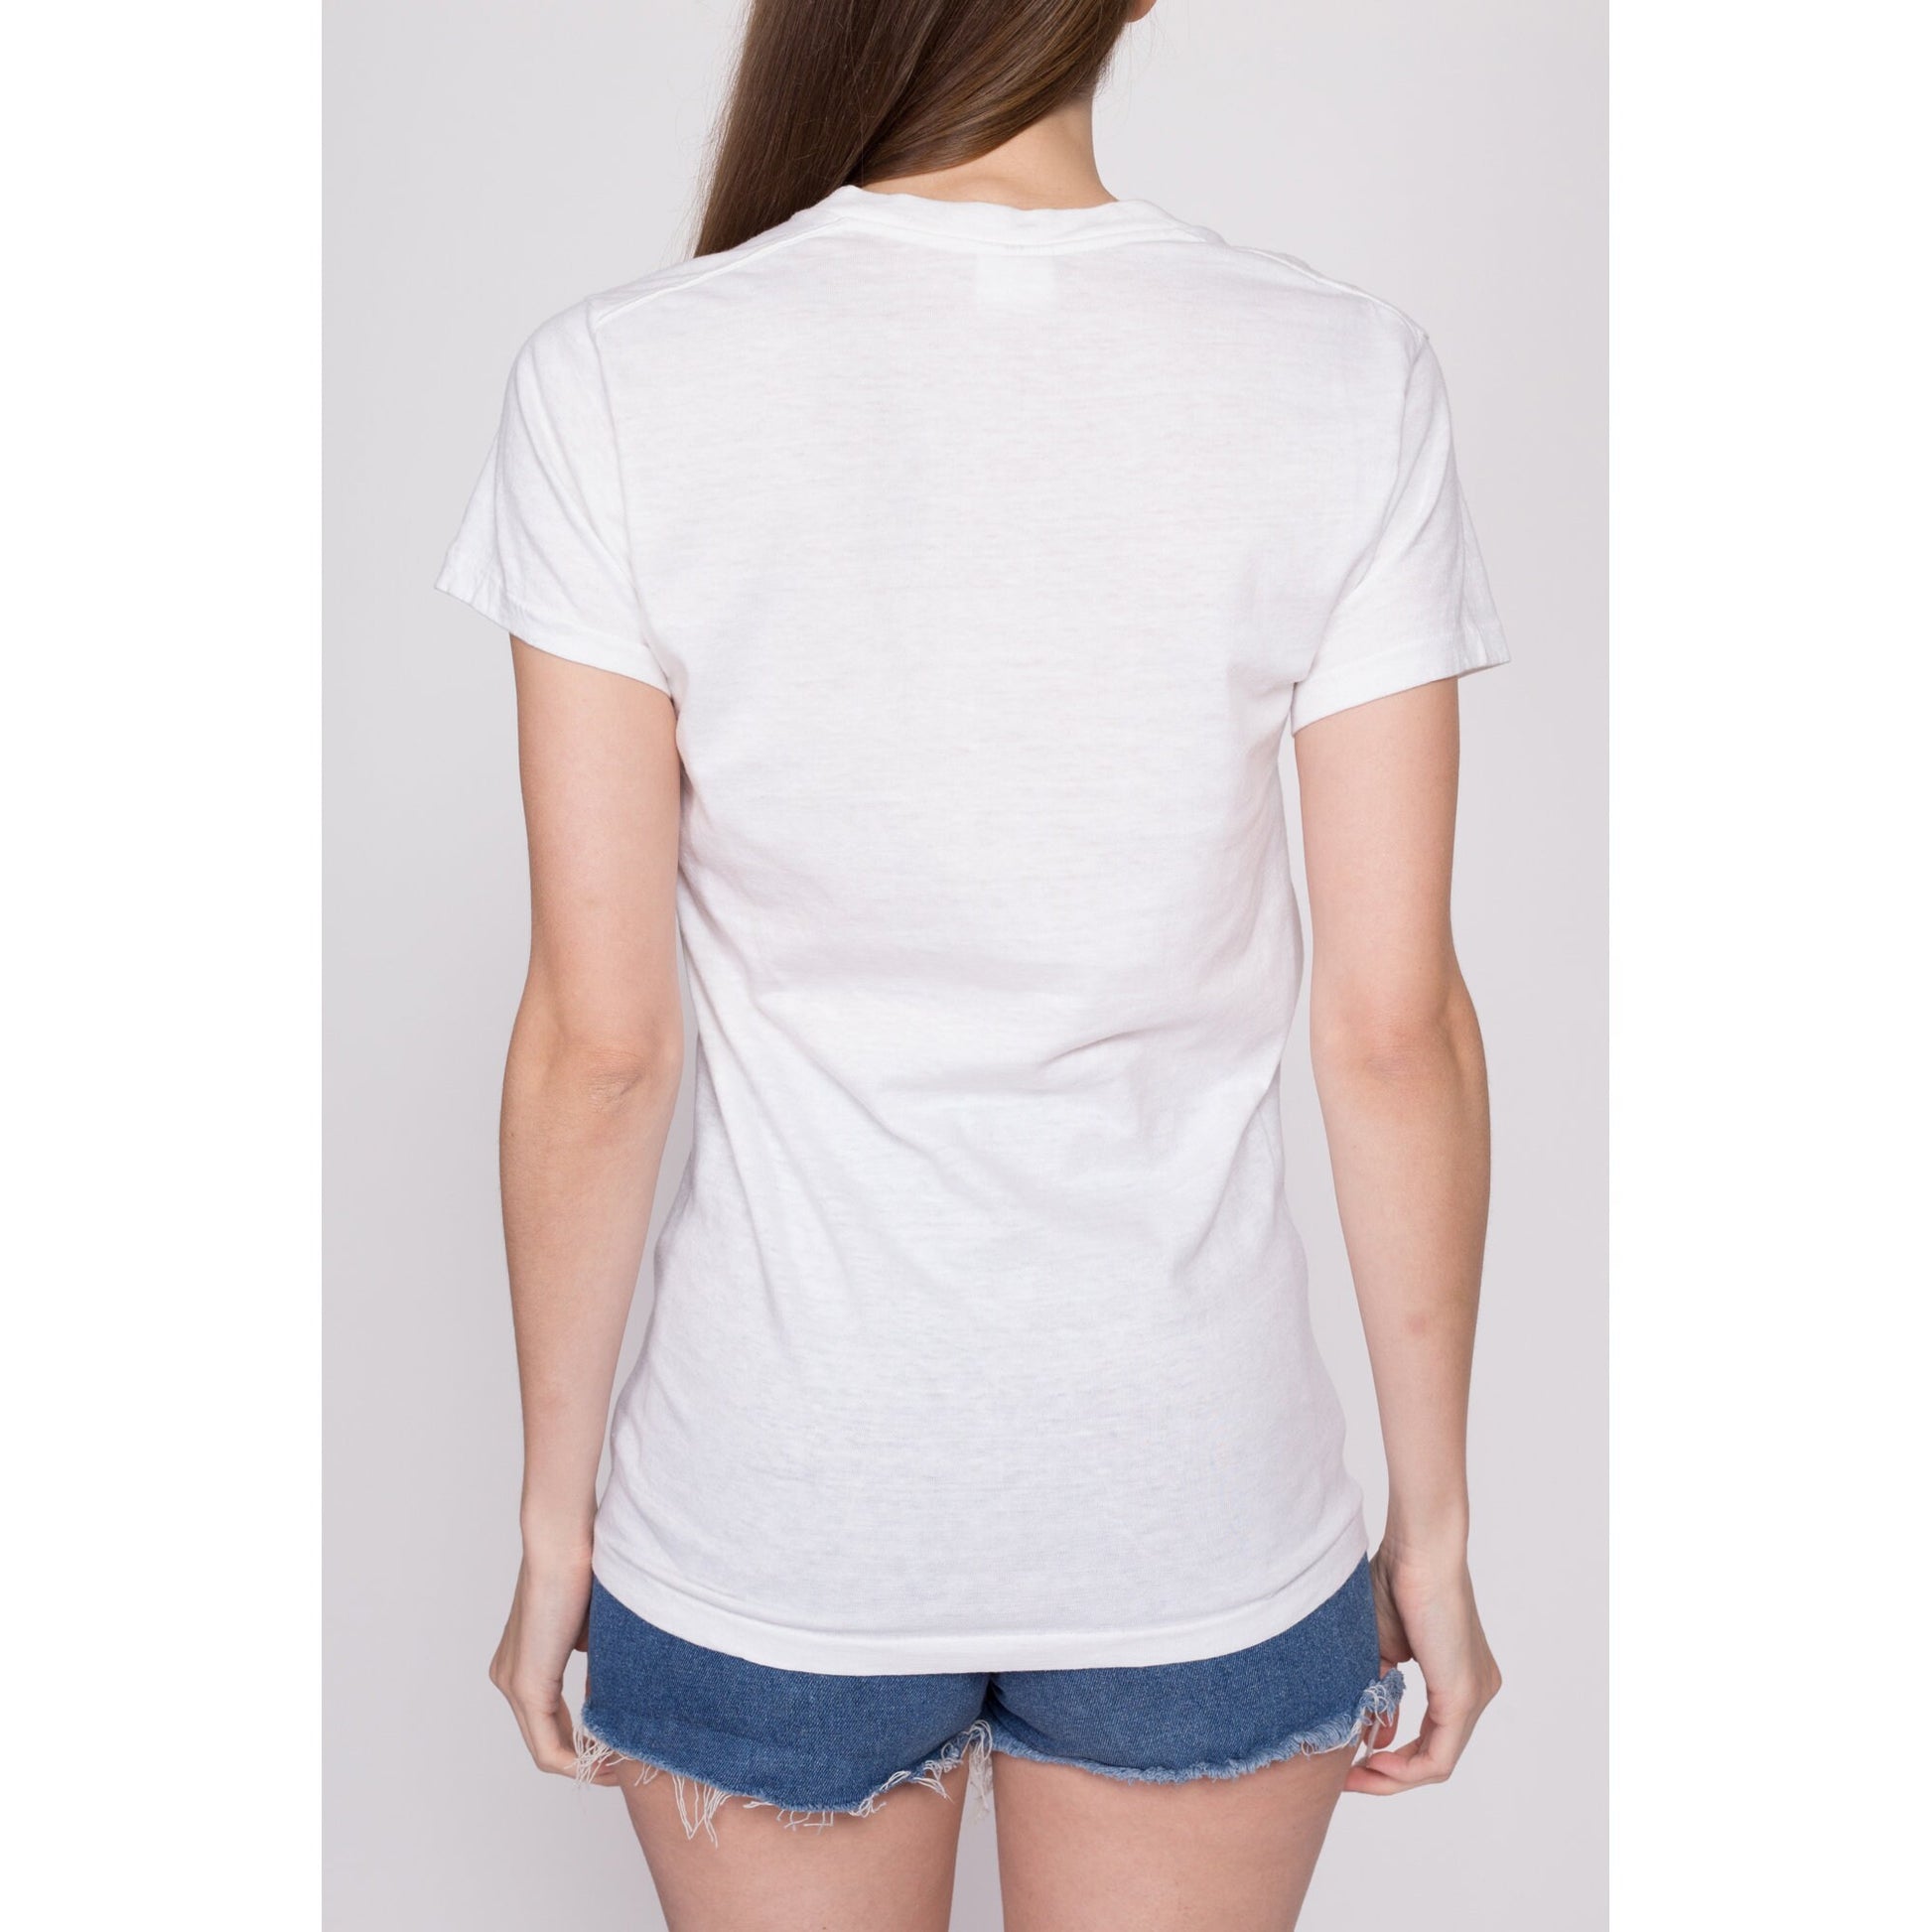 Small 80s Calvin Klein Blank White T Shirt Unisex – Flying Apple Vintage